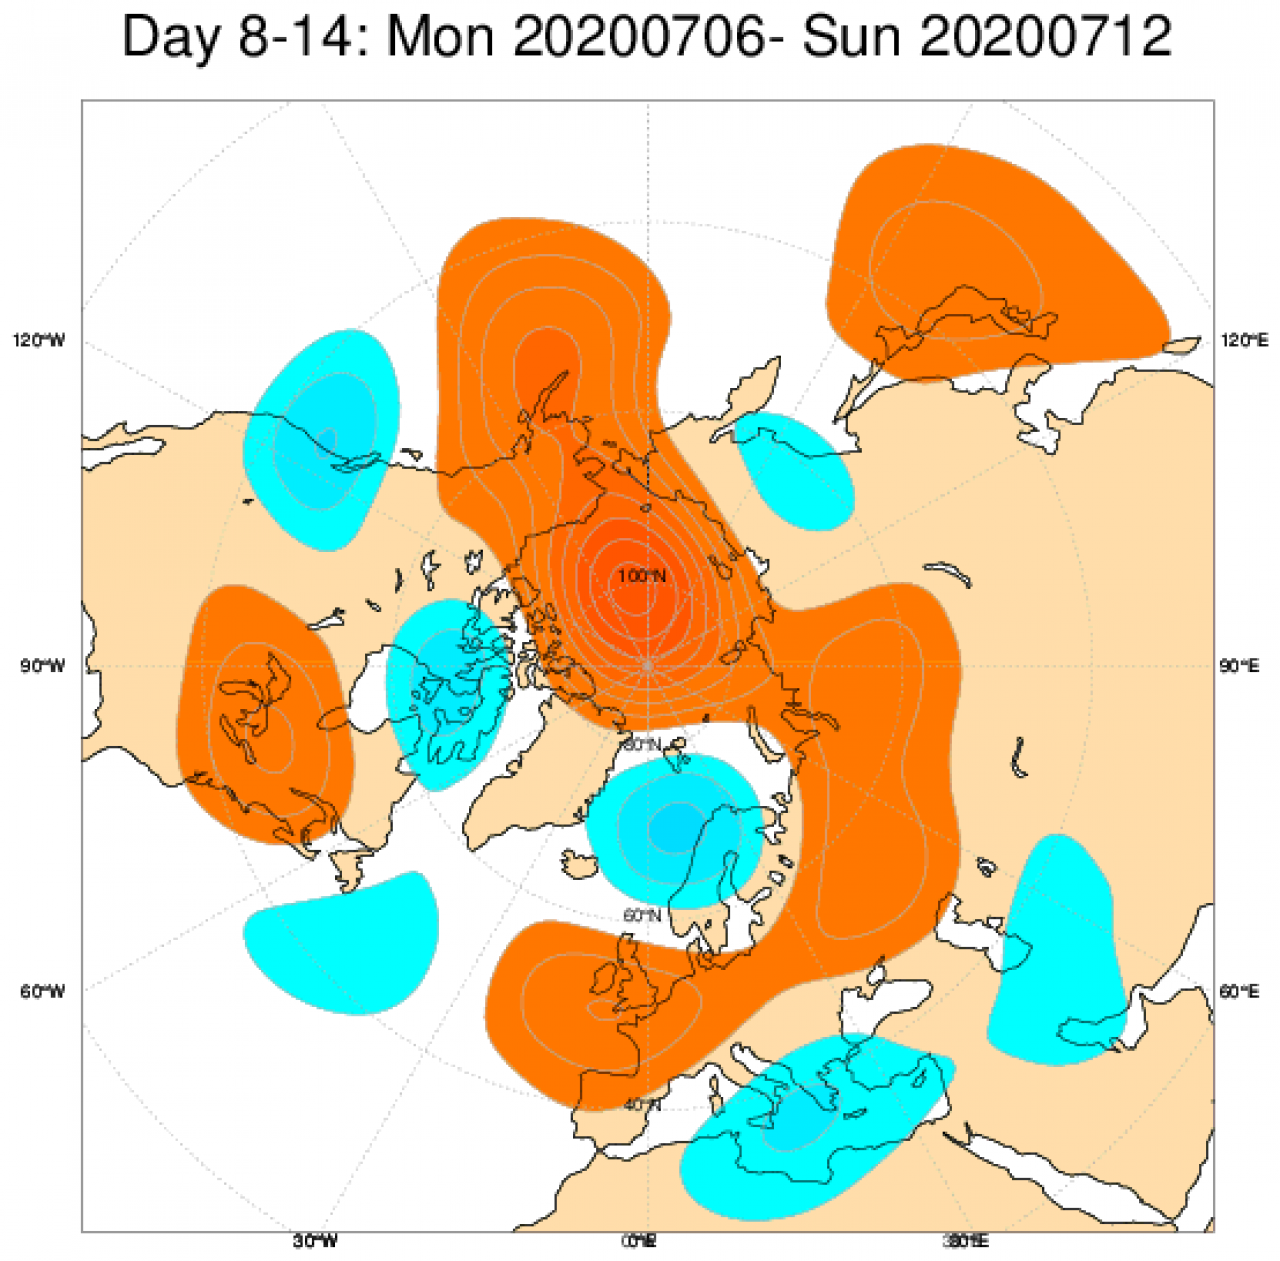  Le anomalie di geopotenziale attese in Europa secondo il modello ECMWF in riferimento al periodo 6-12 luglio